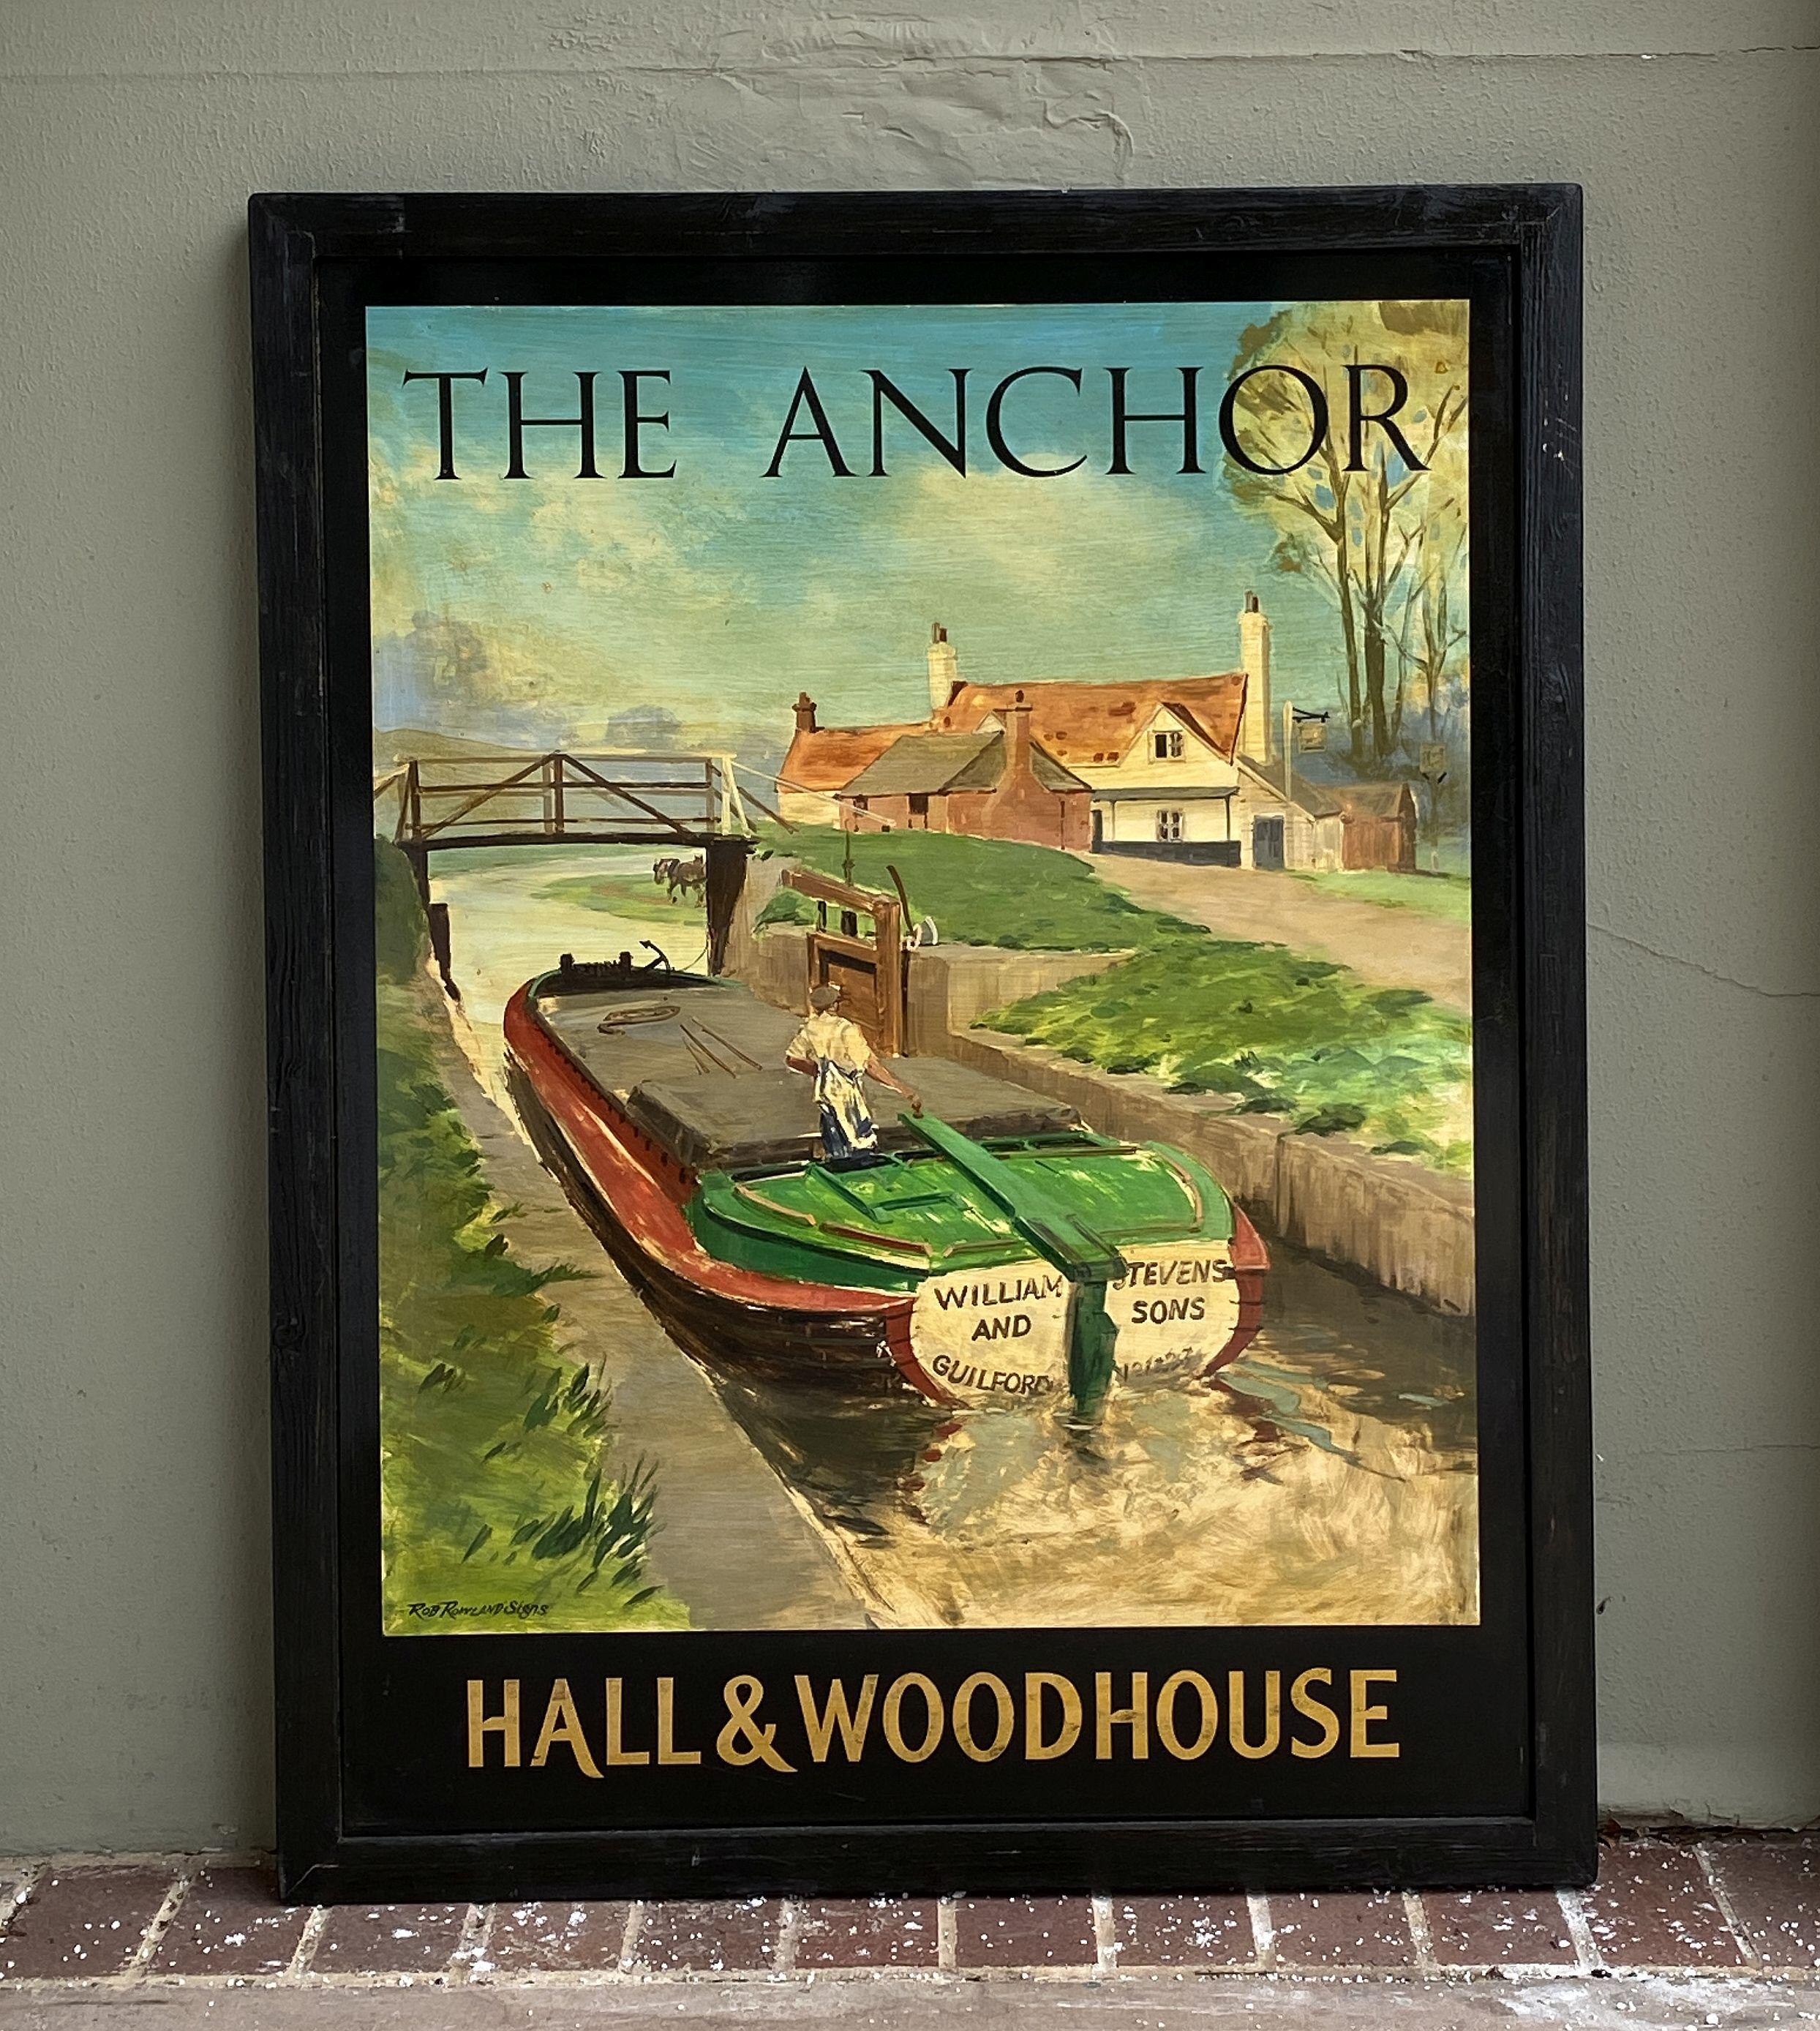 Ein authentisches englisches Pub-Schild (einseitig) mit einem Gemälde eines auf einem Kanal fahrenden Kahns mit dem Titel: The Anchor - Hall & Woodhouse.

Ein sehr schönes Beispiel für eine alte Werbegrafik, bereit für die Ausstellung.

Hall and